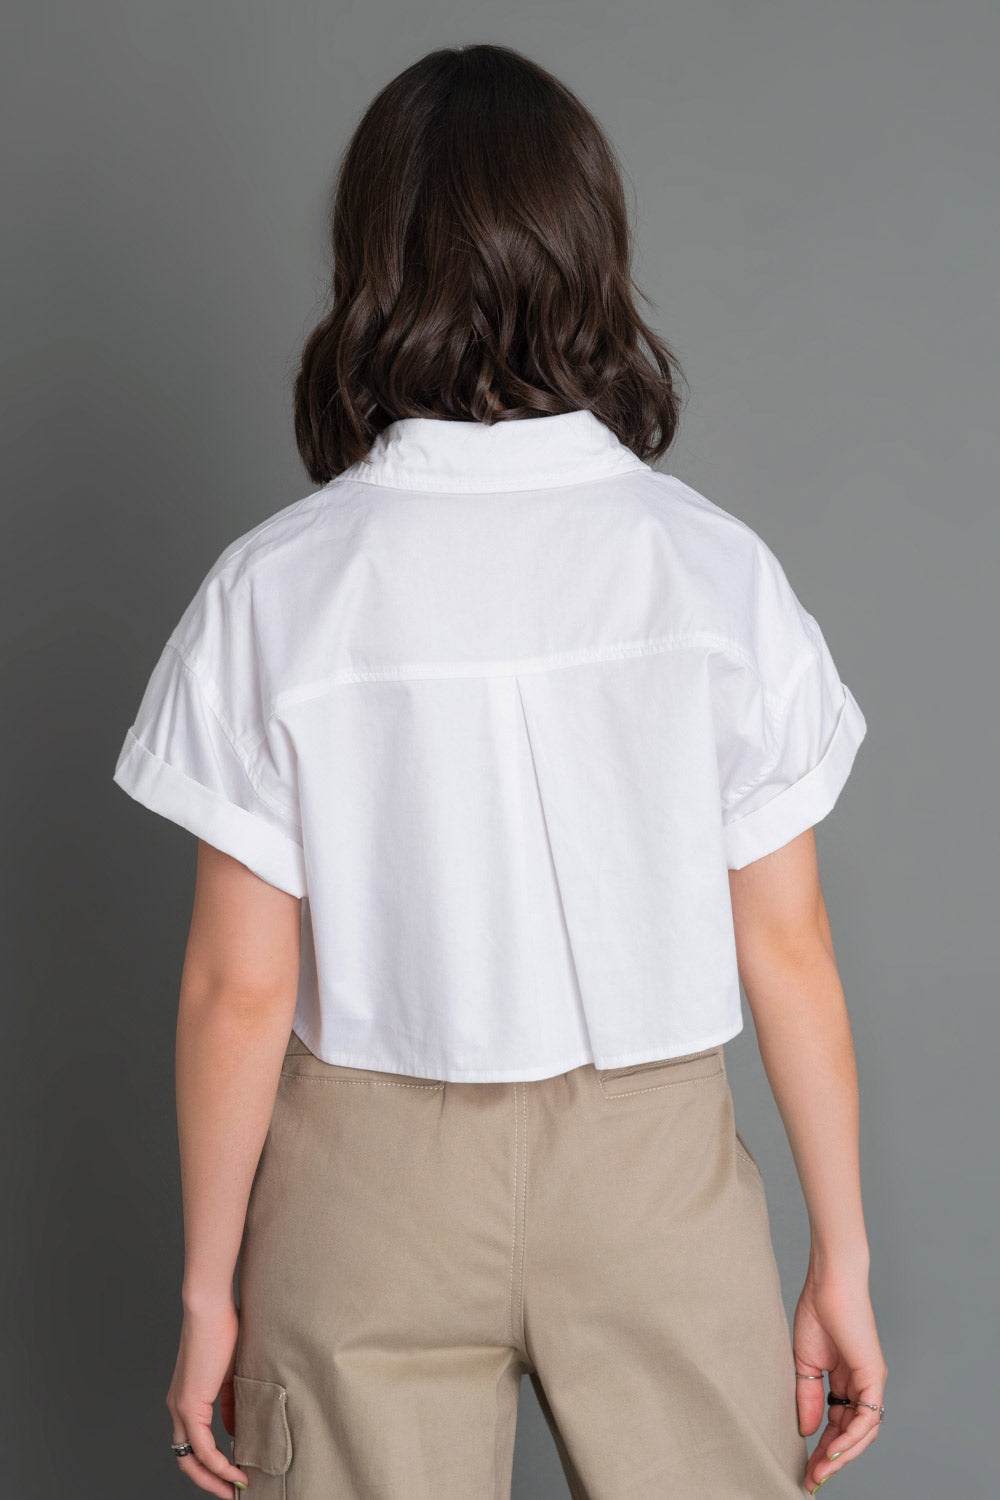 Camisa corta de fit ligeramente oversized, manga corta con doblez en borde, cuello camisero, bolsillos frontales en bajo y pinza de amplitud en espalda.